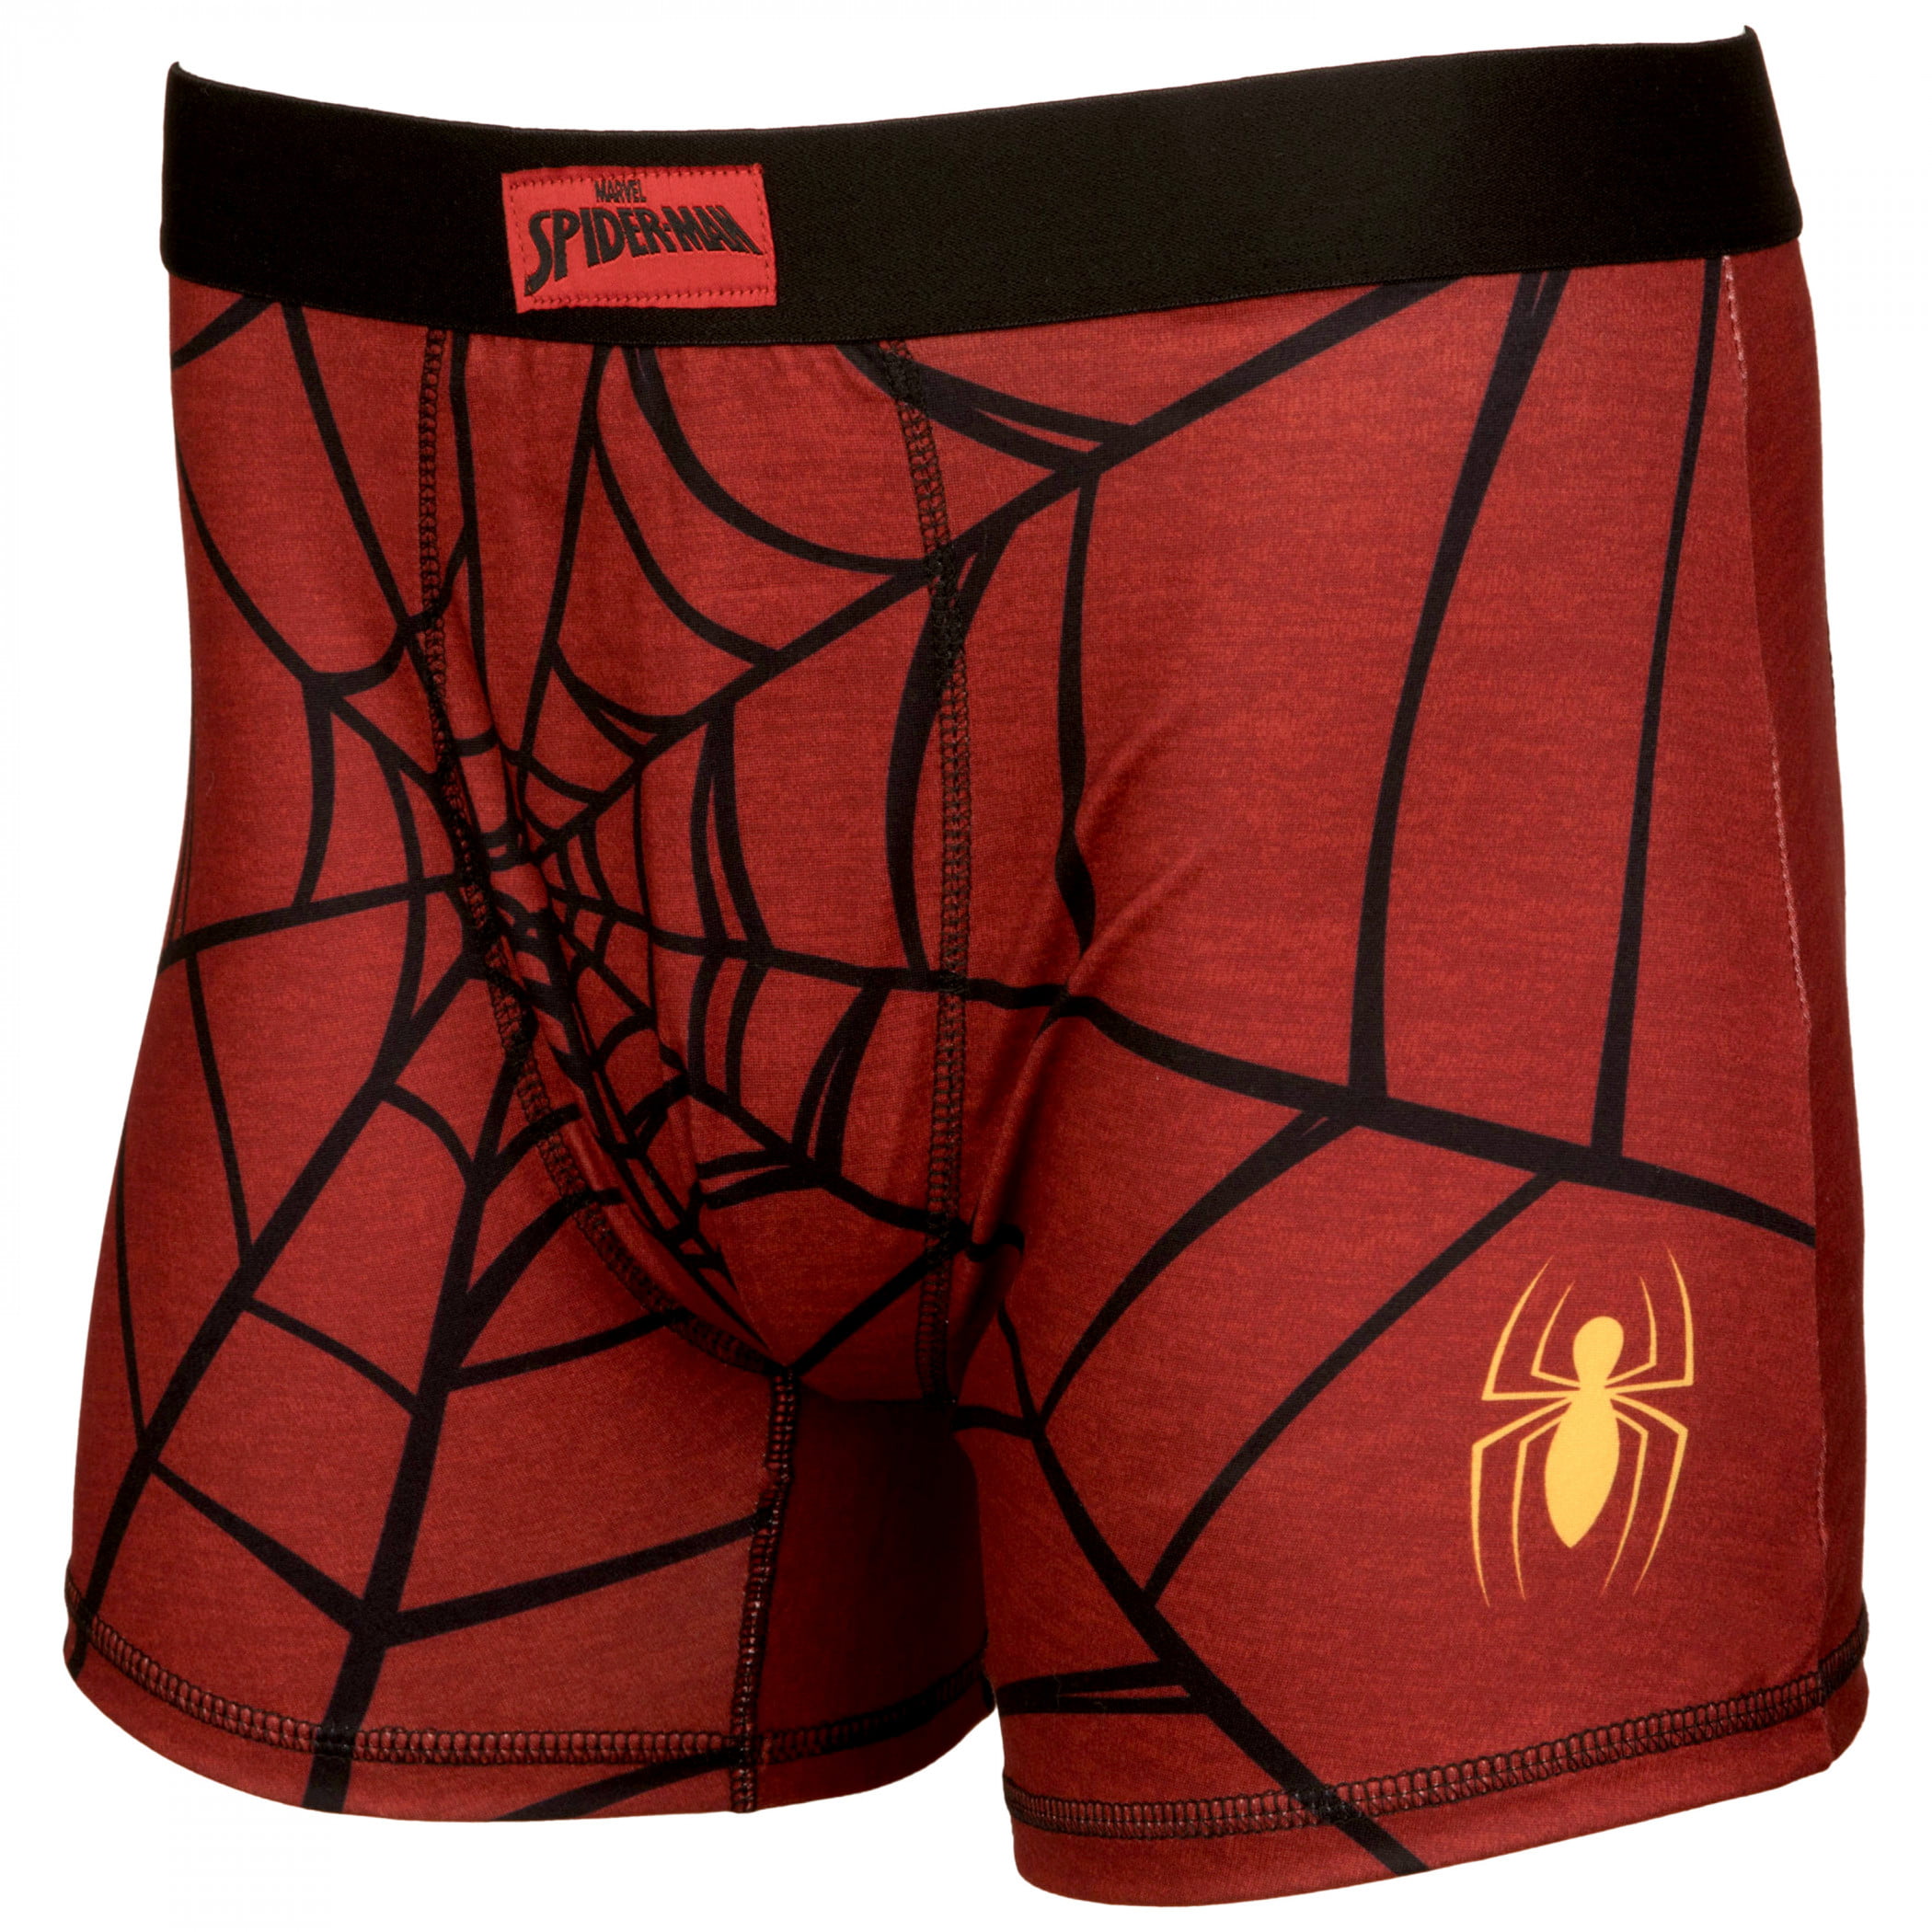 Spiderman Underwear, Mens Spiderman Underwear, Spider Sense Danger